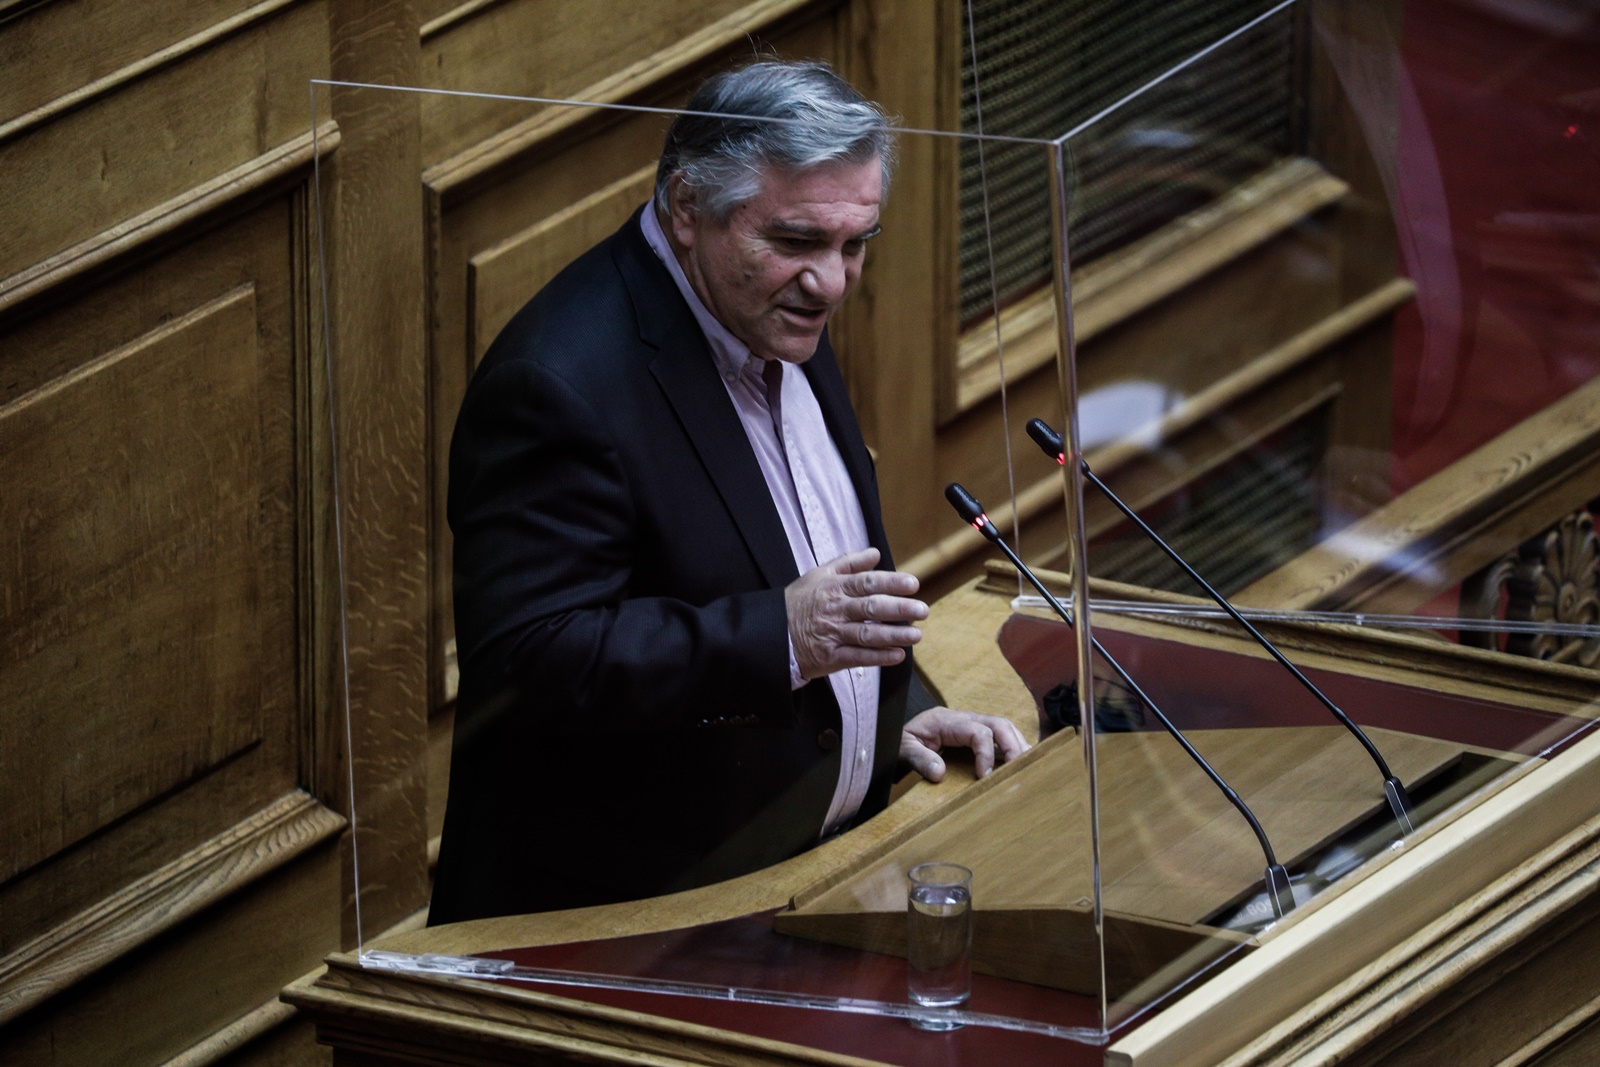 Πρόταση μομφής – Βουλή: “Μεγαλειώδης ηθική και πολιτική πράξη αν ο Μητσοτάκης ζητούσε συγγνώμη”